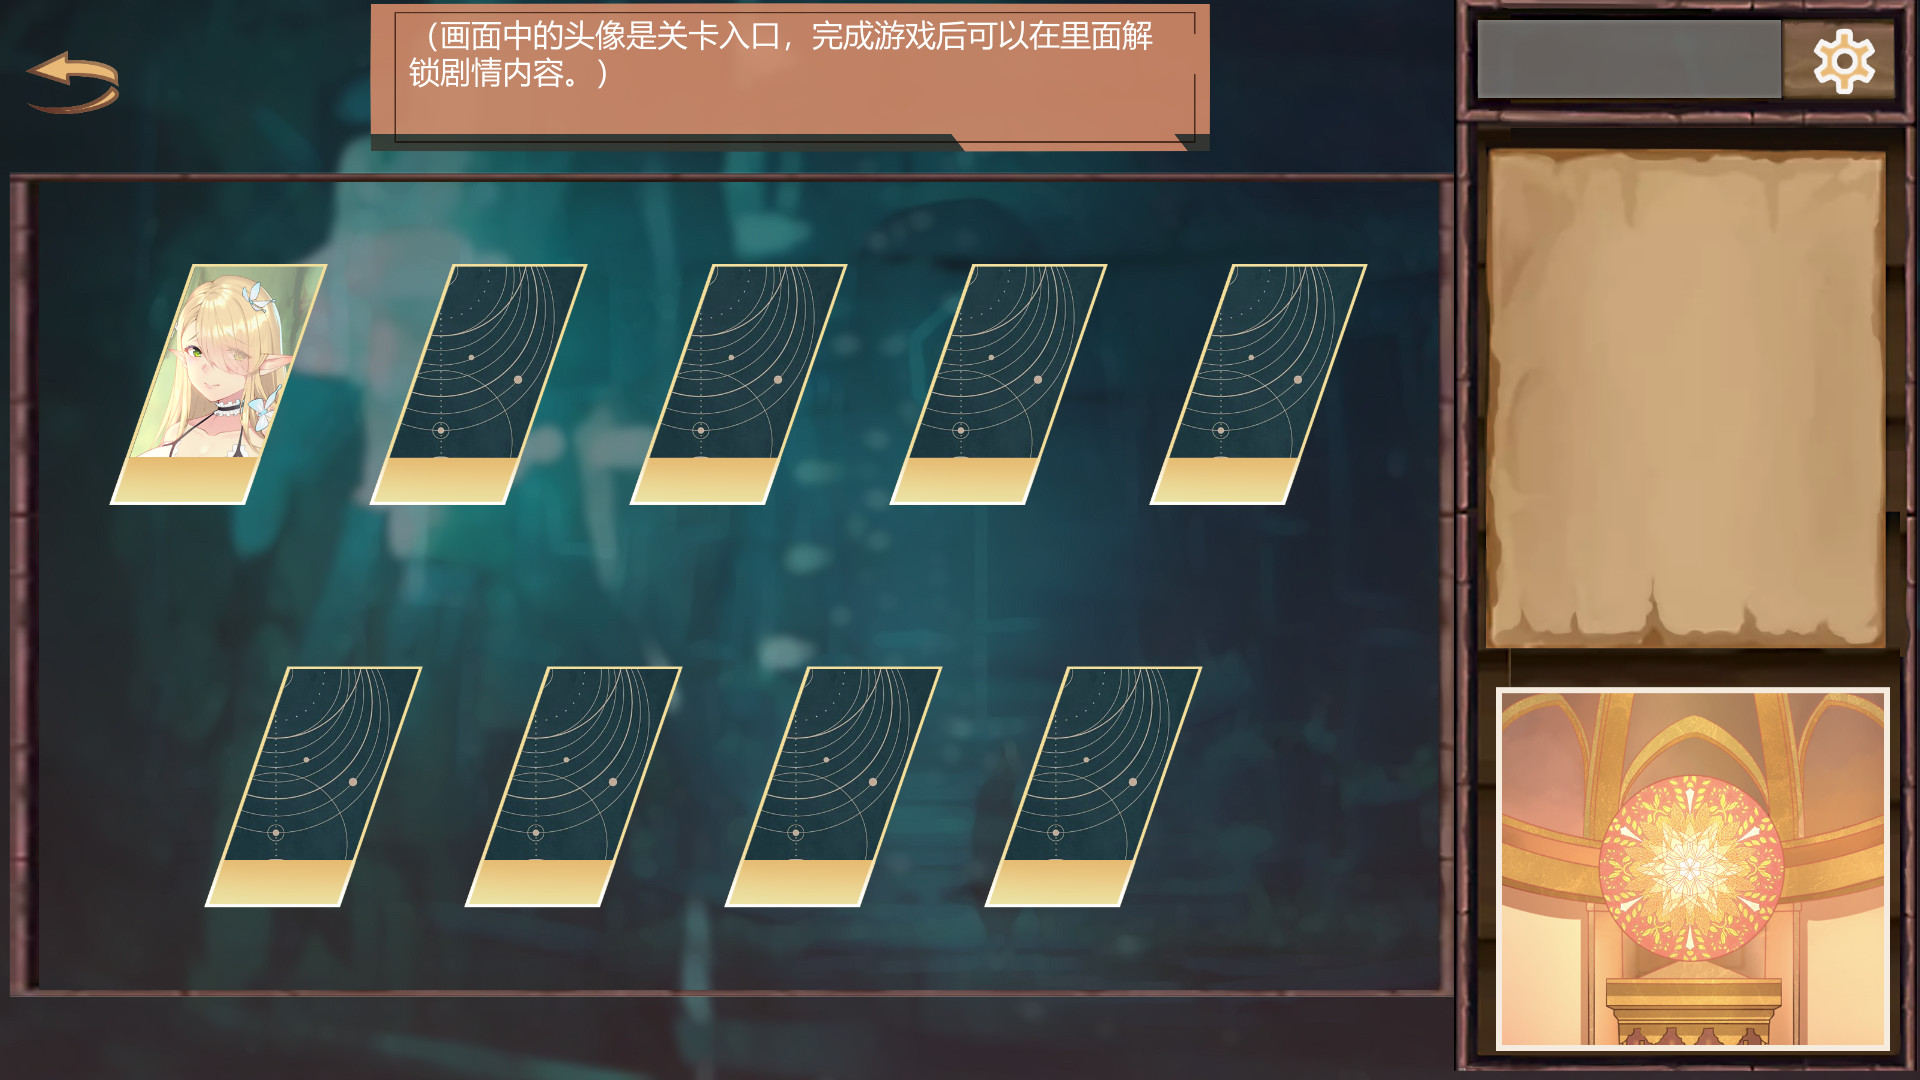 牛头人迷宫/Tauren maze screenshot